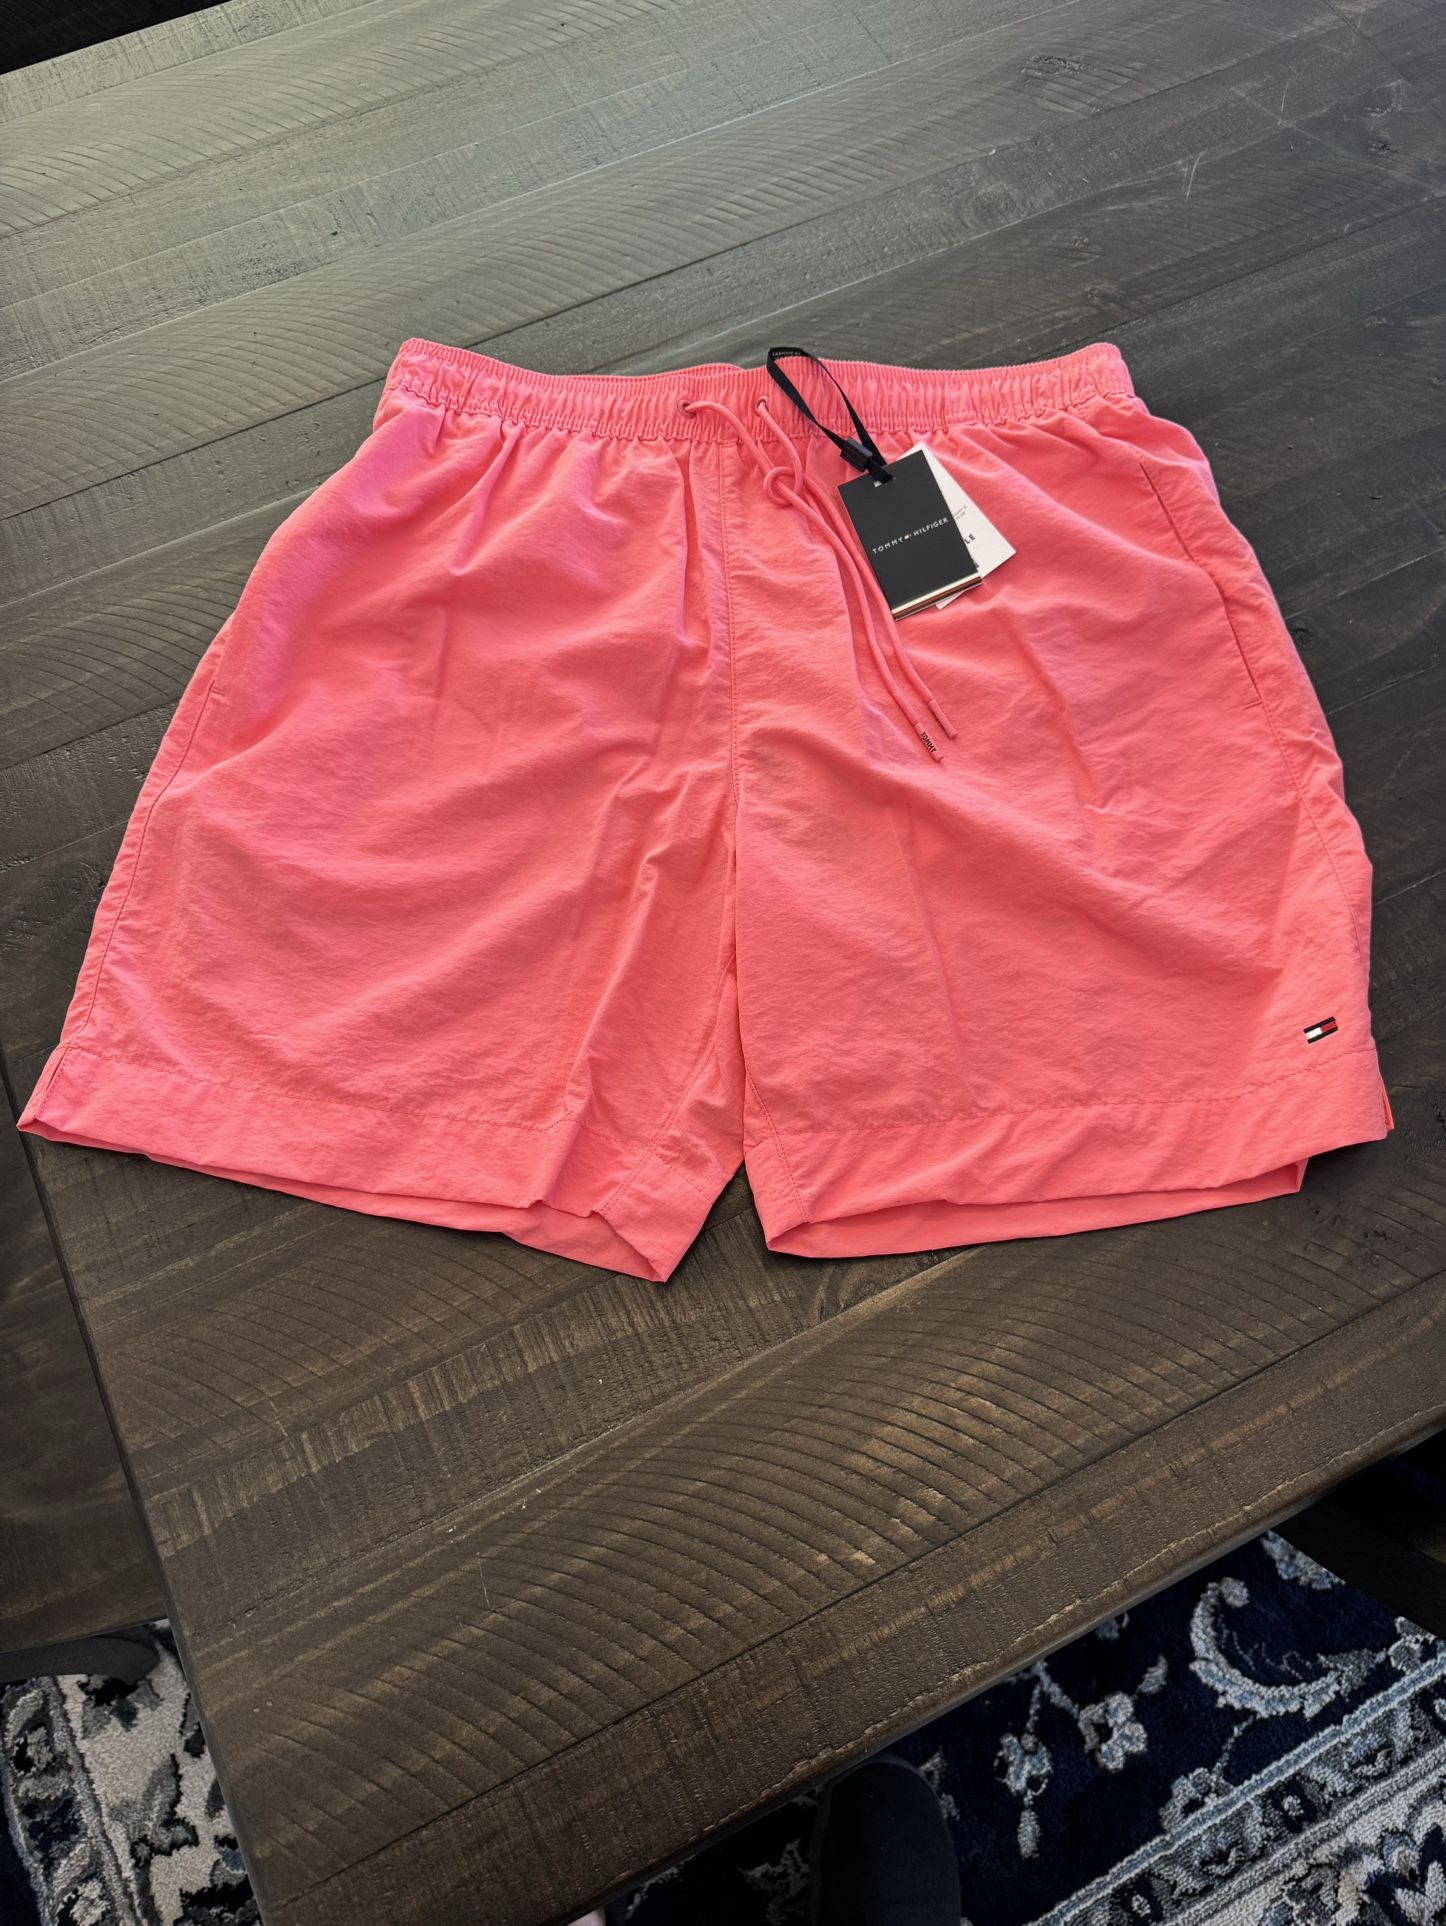 New Tommy Hilfiger Swim Shorts Size Medium 